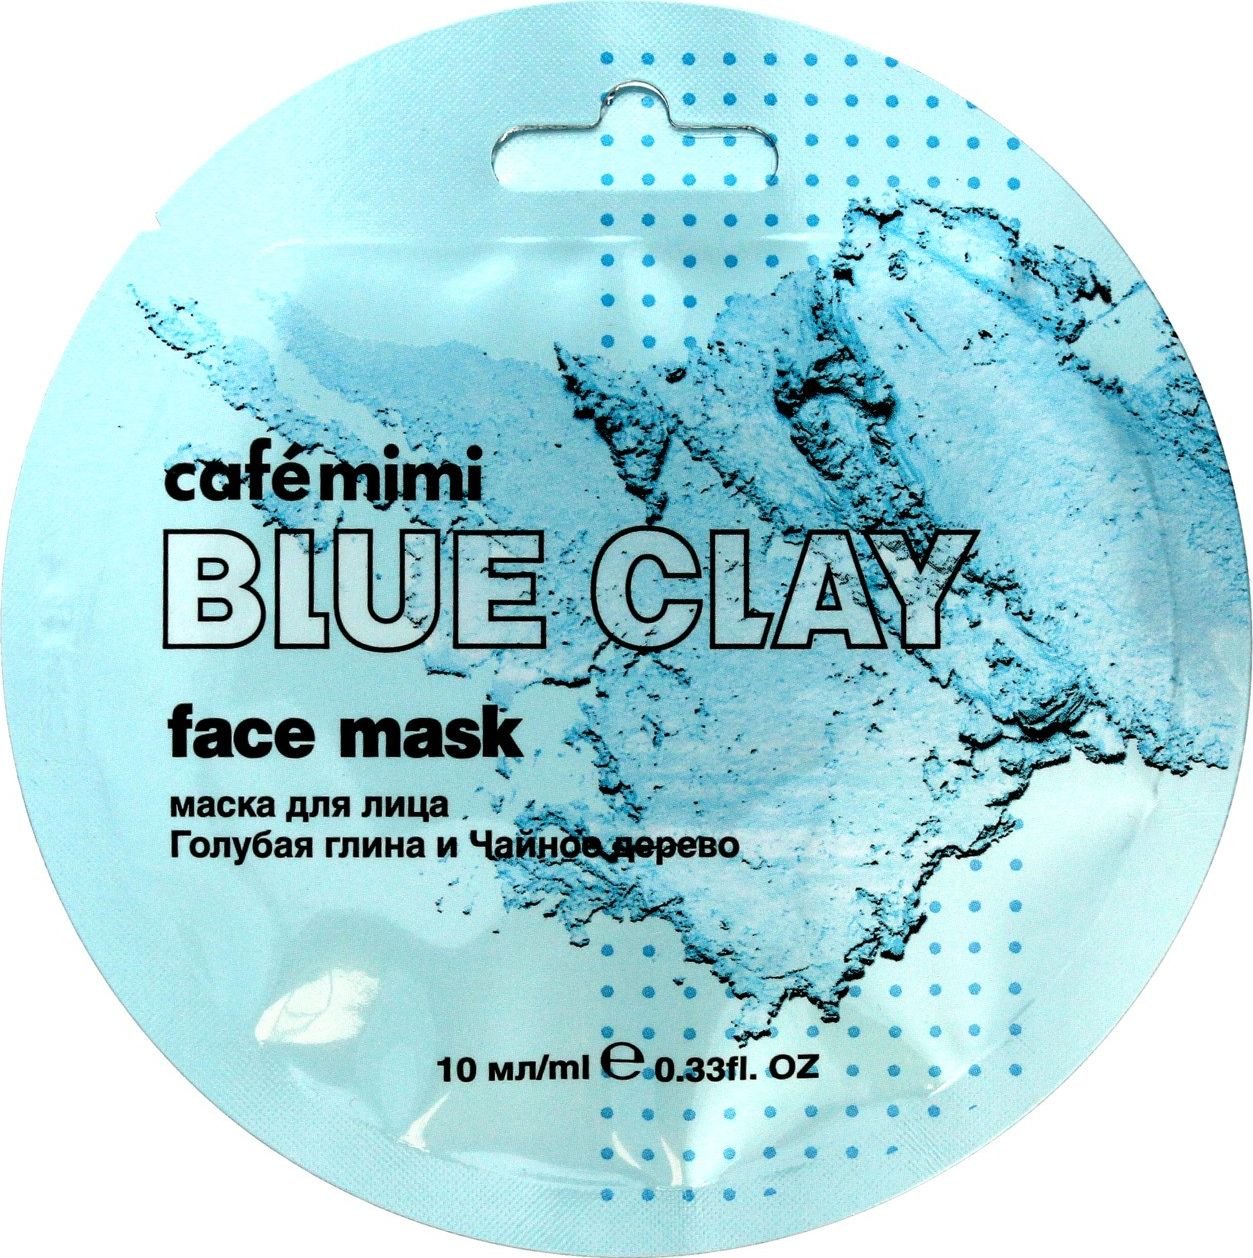 Cafe Mimi Blue Clay Maseczka do twarzy Niebieska Glinka & Drzewo Herbaciane 10ml